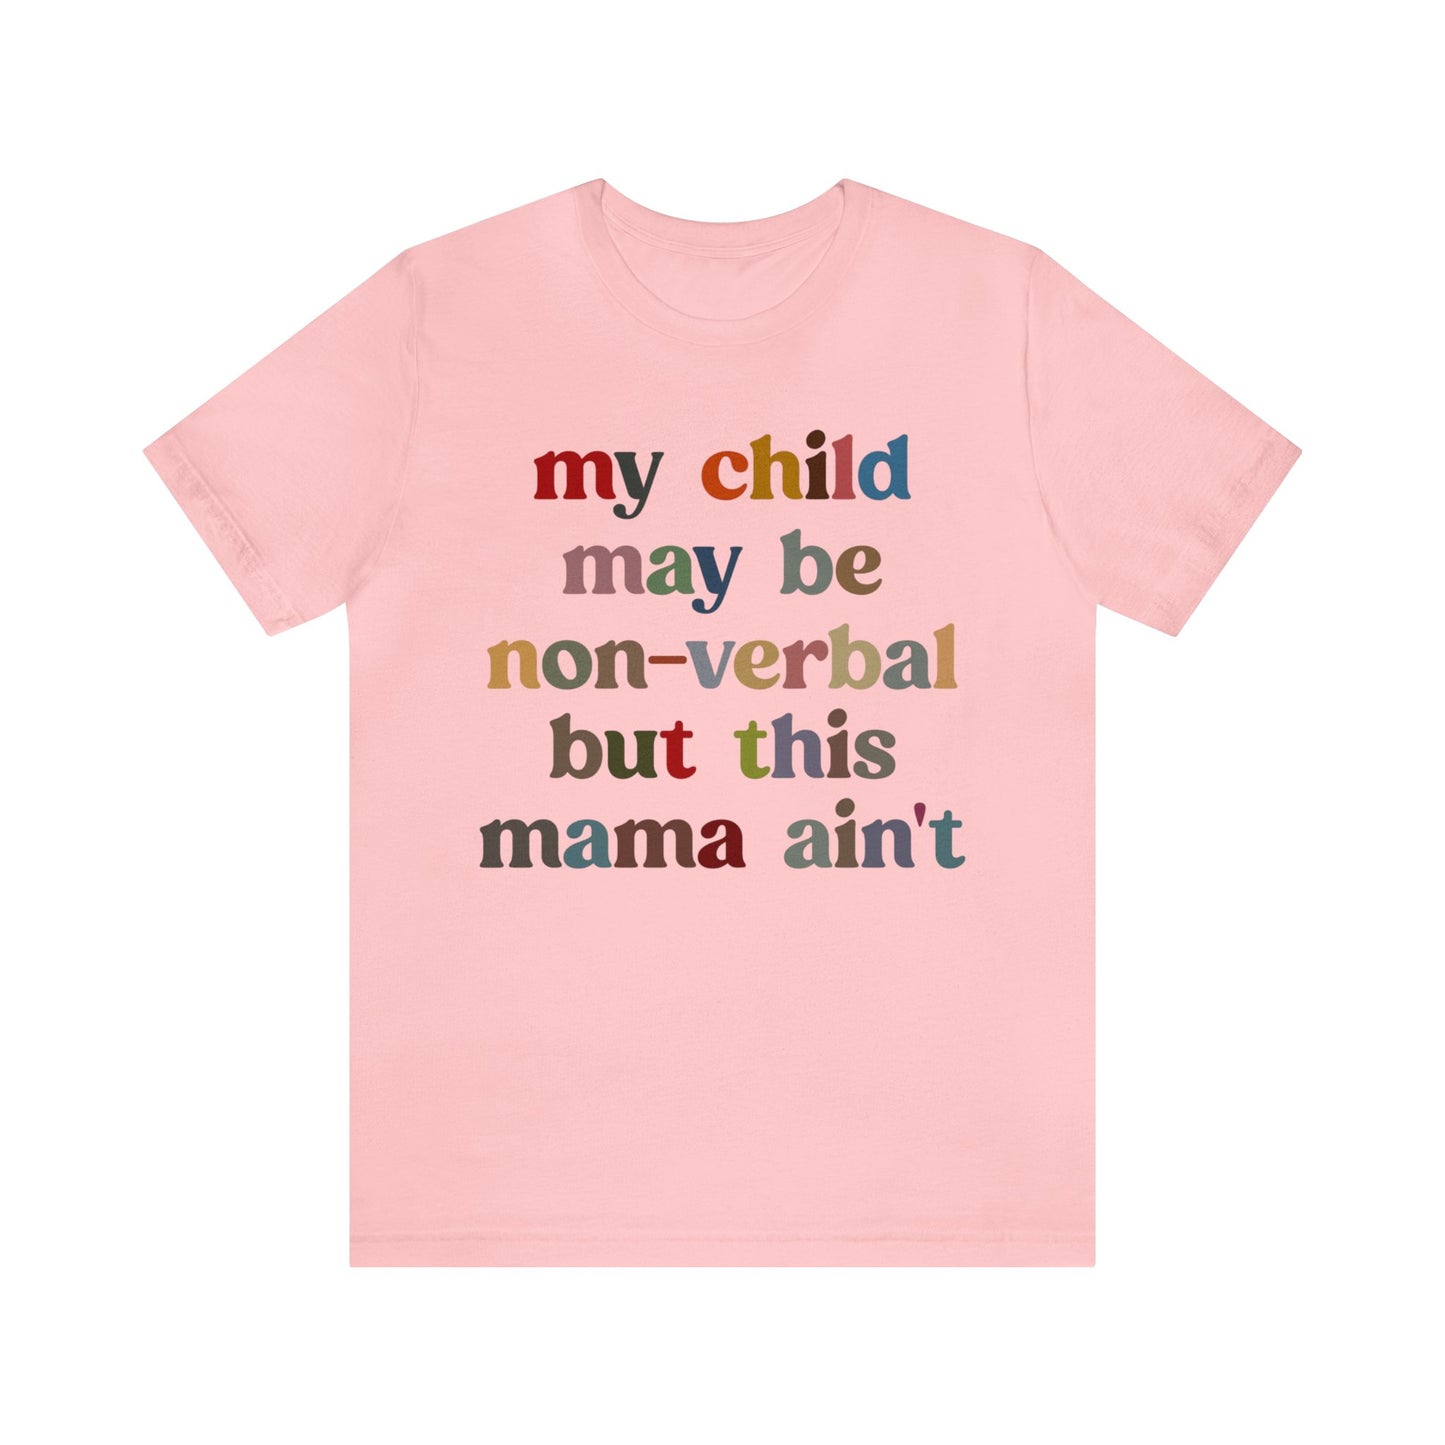 My Child May Be Nonverbal But His Mama Ain't Shirt, Non-verbal Kid Mama Shirt, Autism Awareness Shirt Autism Mom Shirt for Mama, T1463